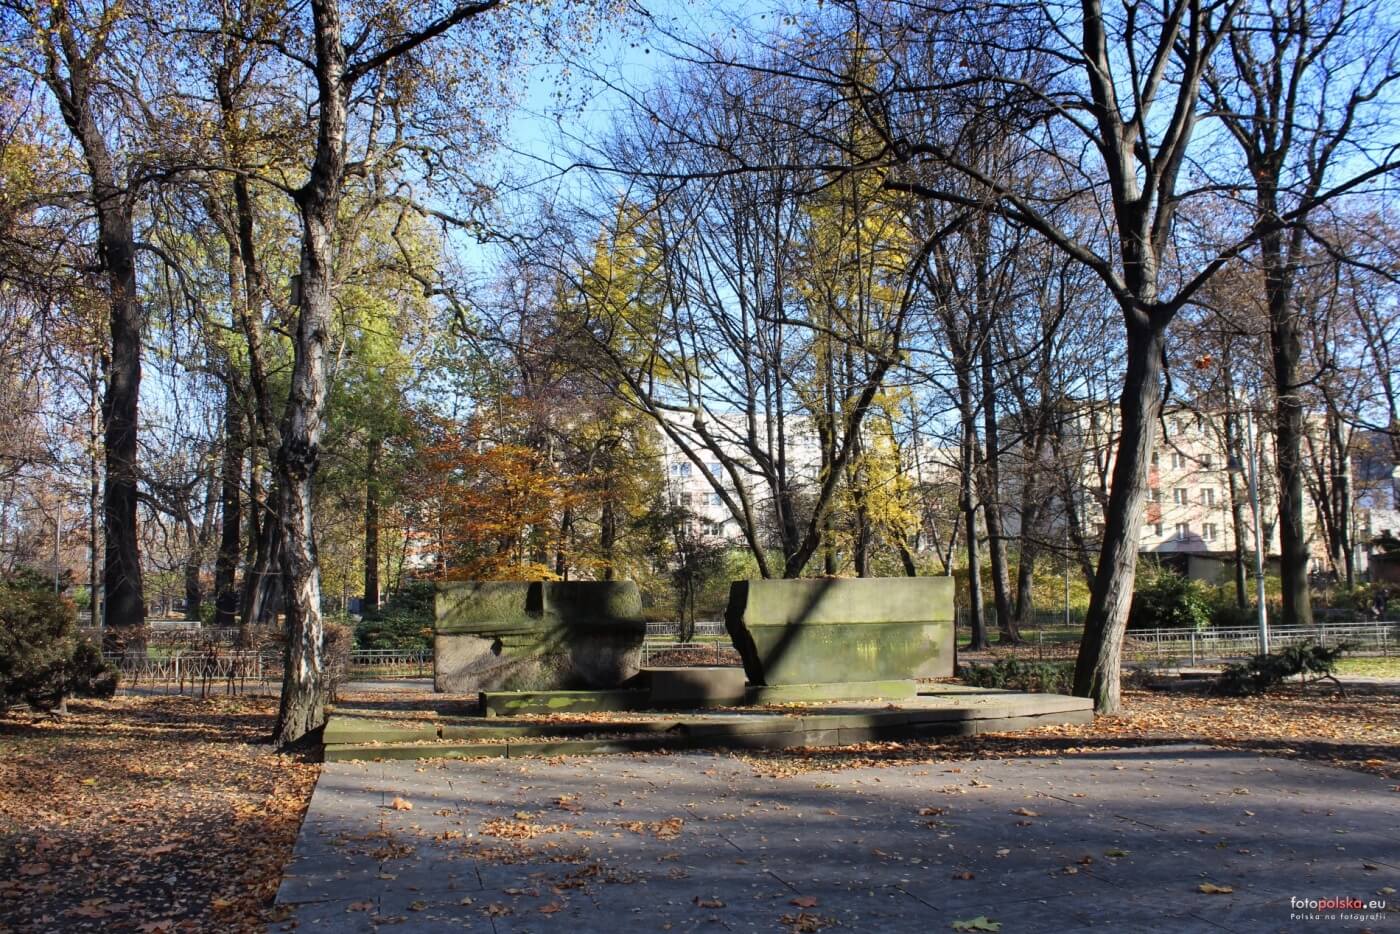 Chorzów pomnik pamięci żółnierzy Armii Czerwonej